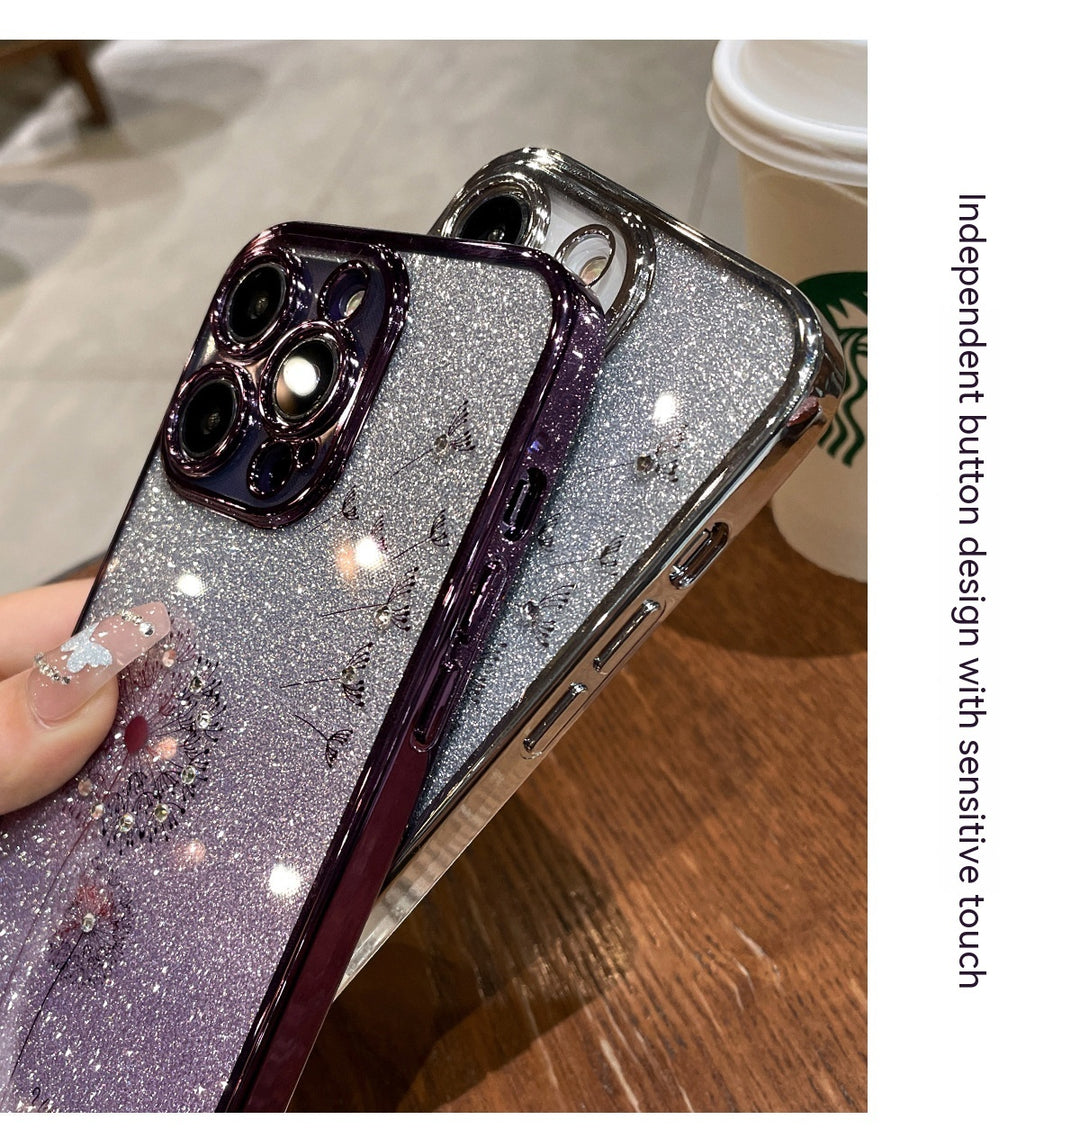 Dandelion Gradient Glitter Silicone Phone Case